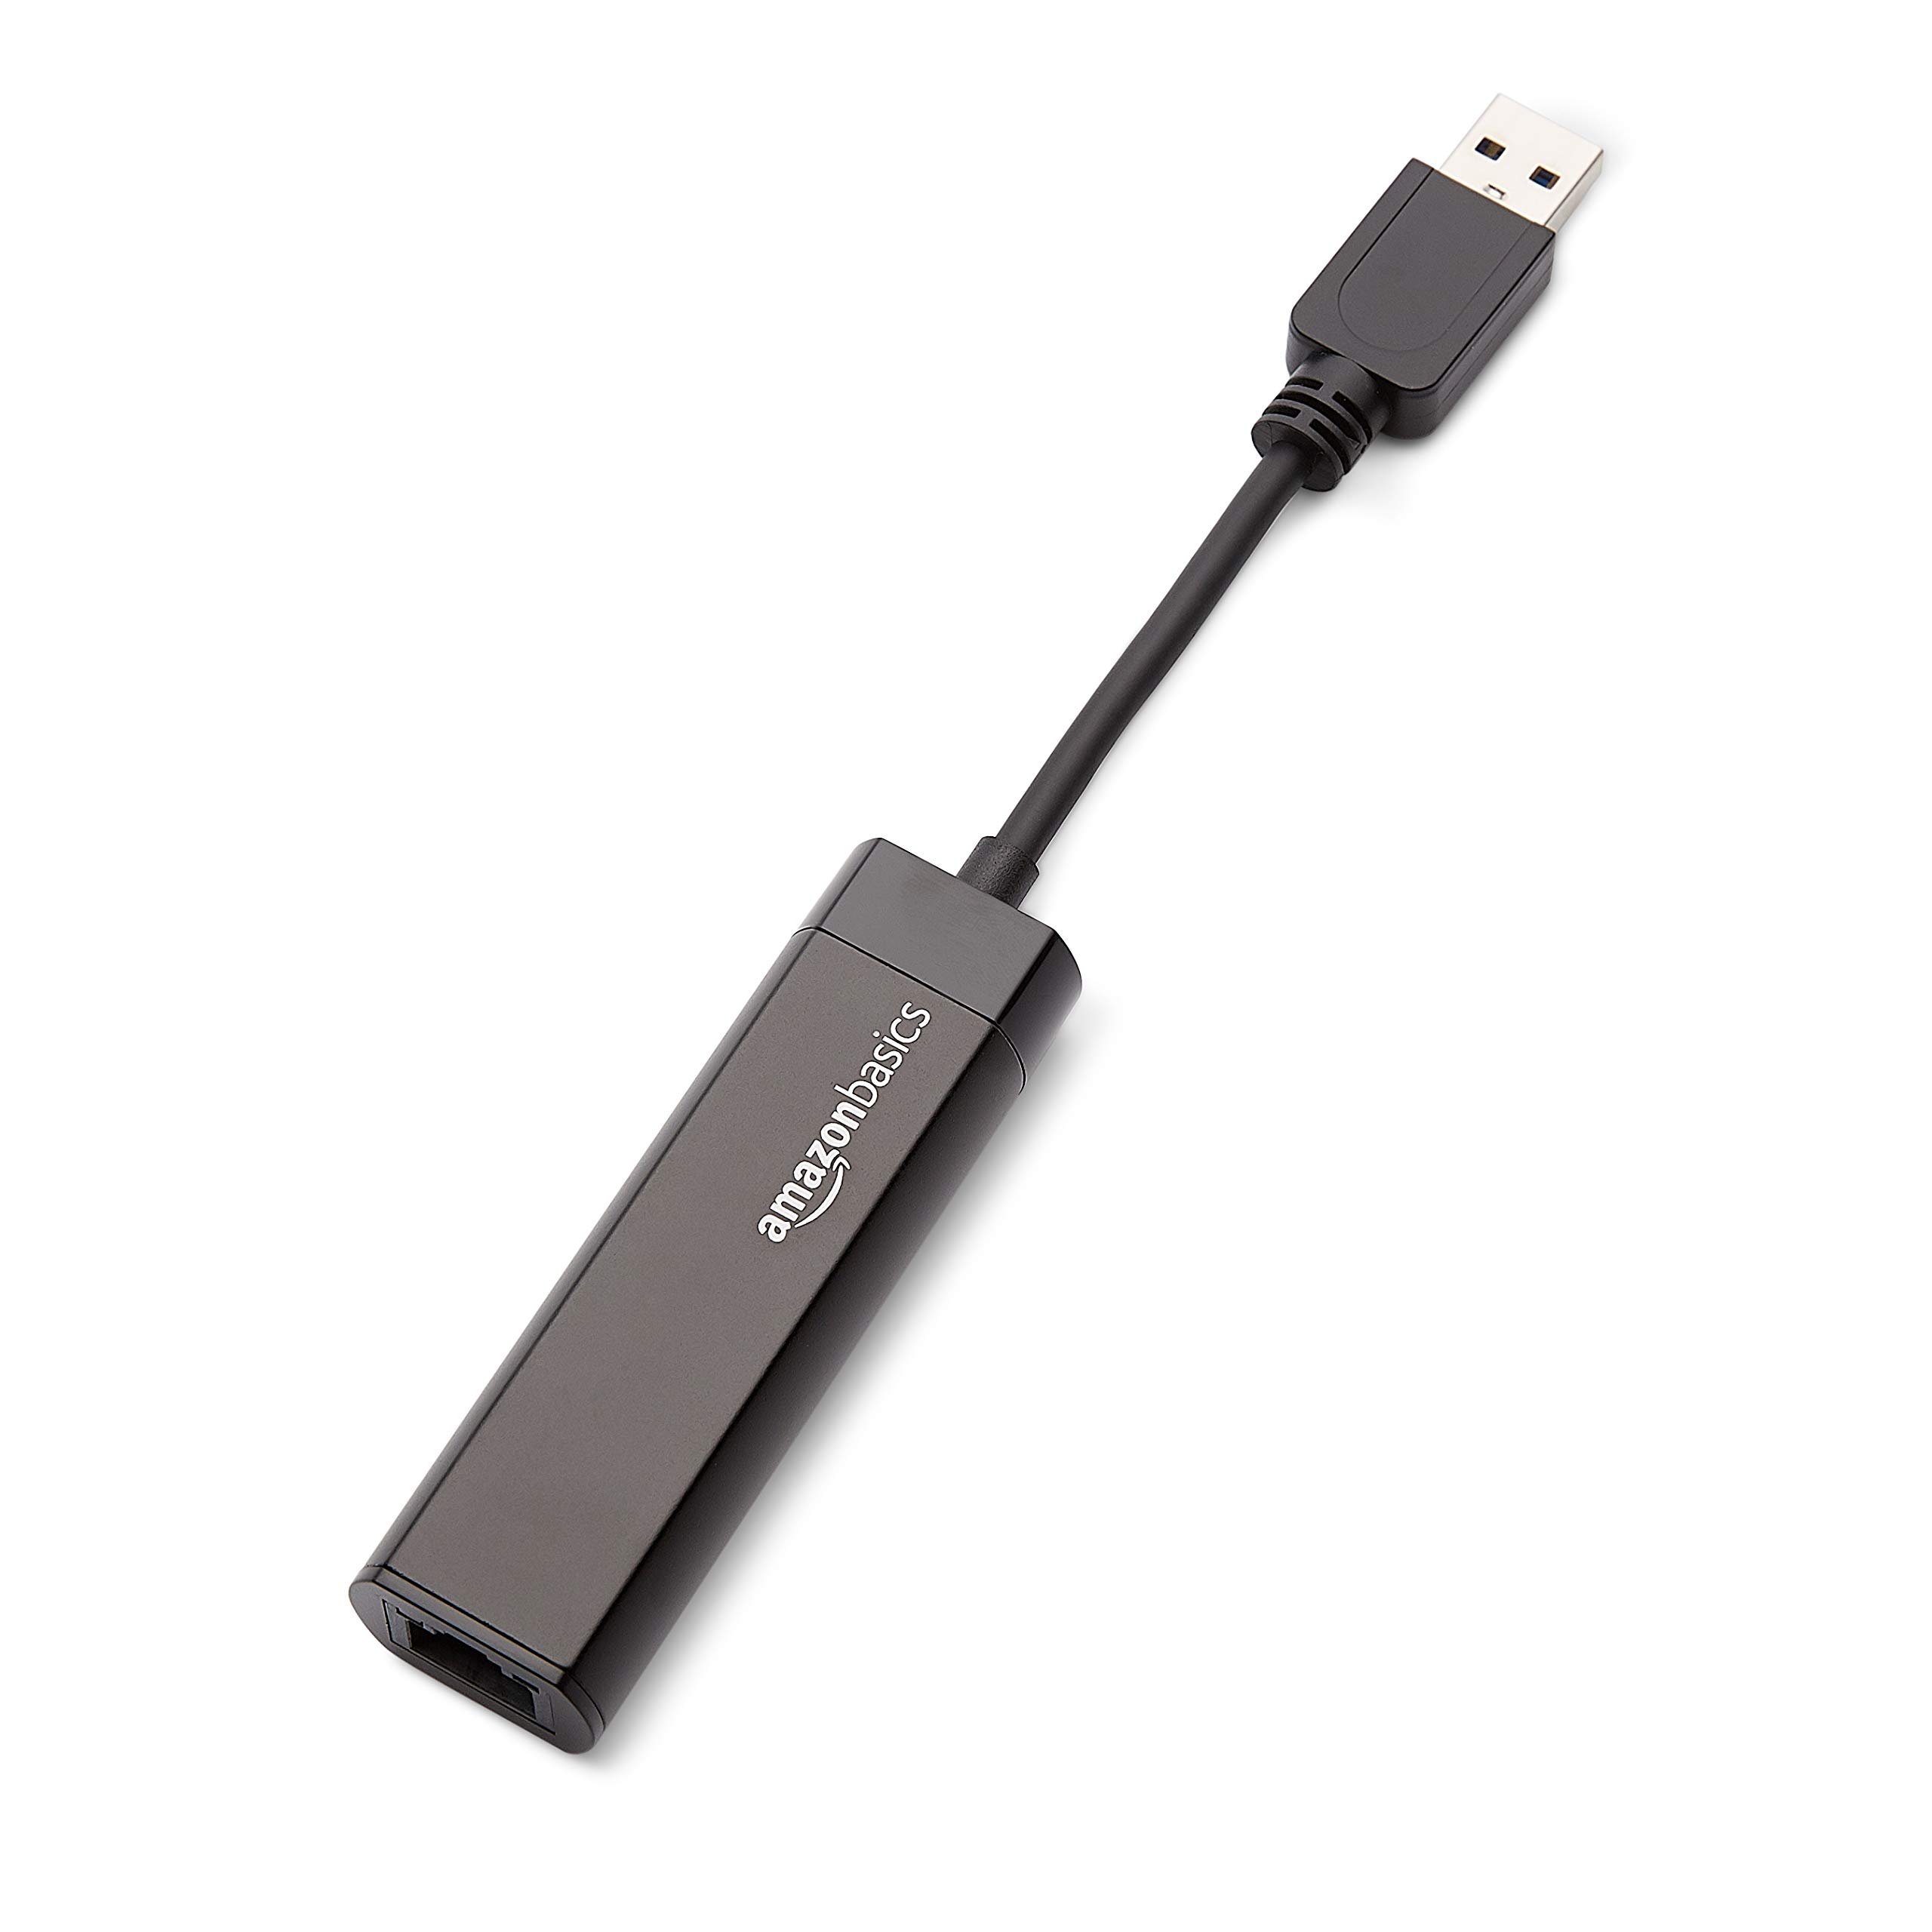 Amazon Basics USB 3.0 to 10/100/1000 Gigabit Ethernet Internet Adapter, Black